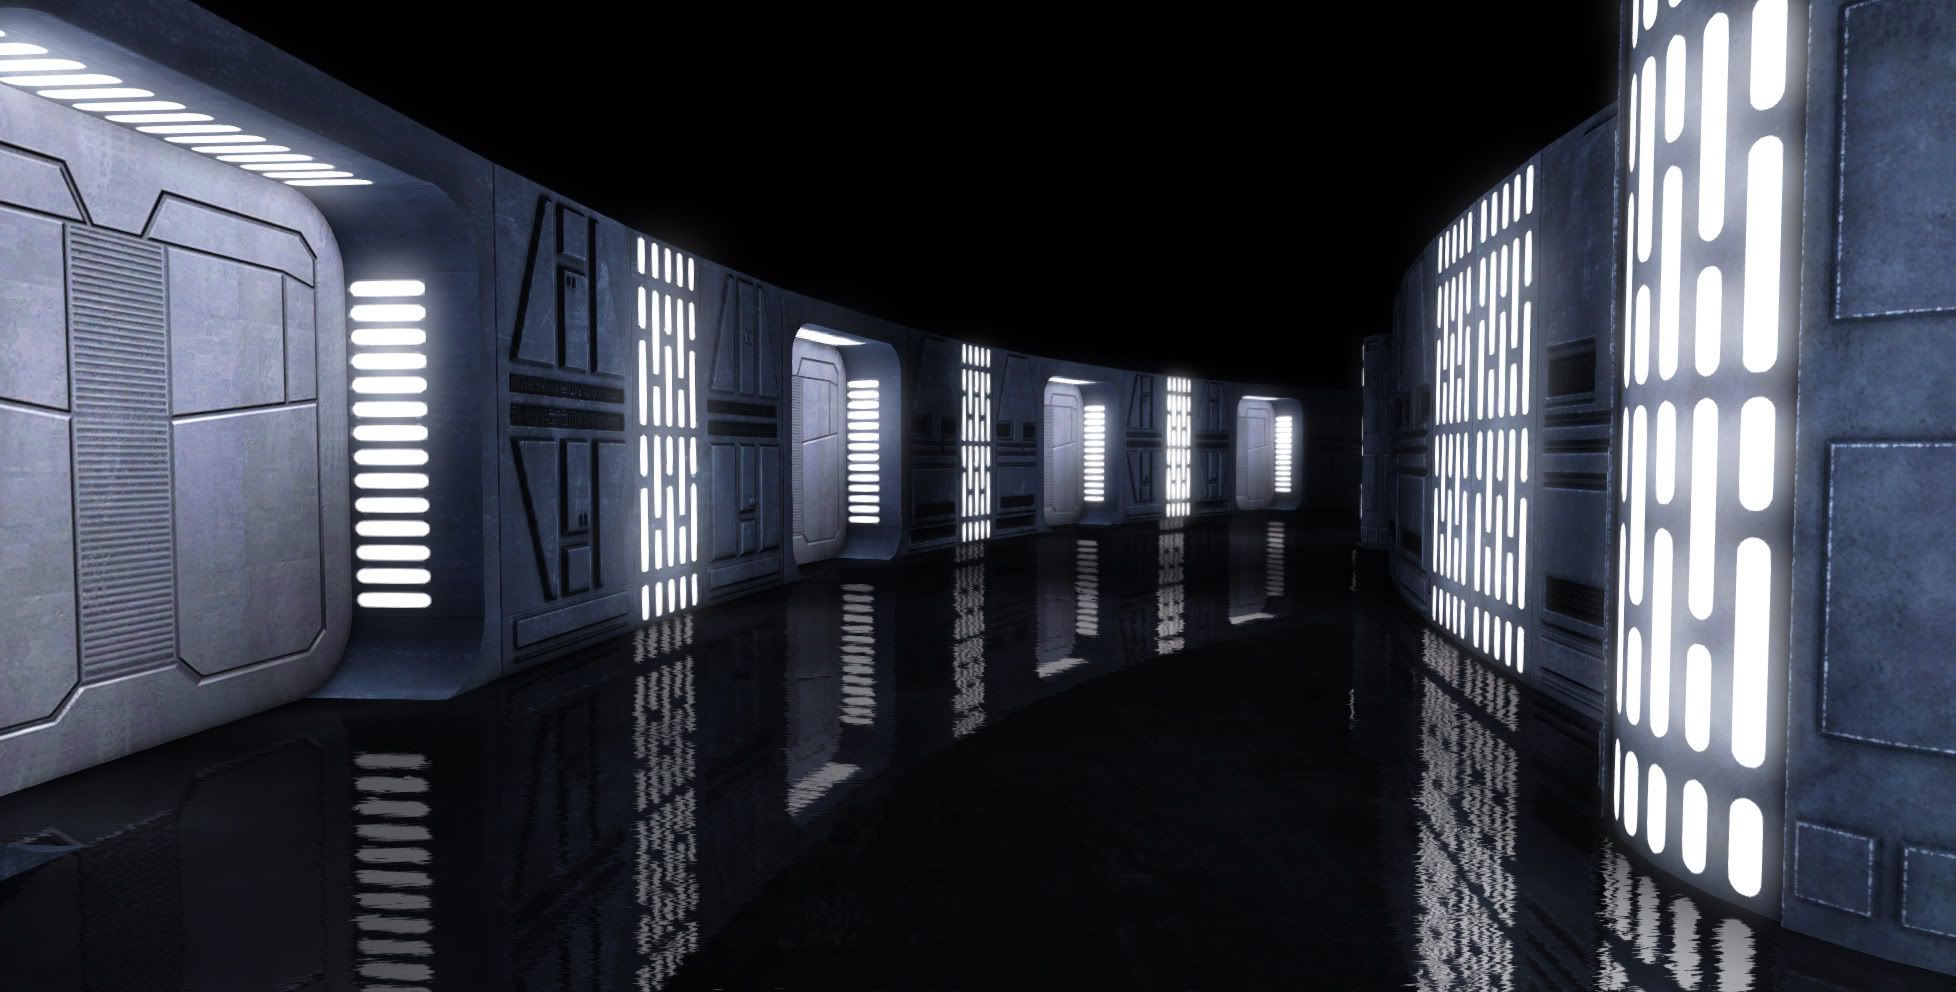 Star Wars Original Death Star Interior